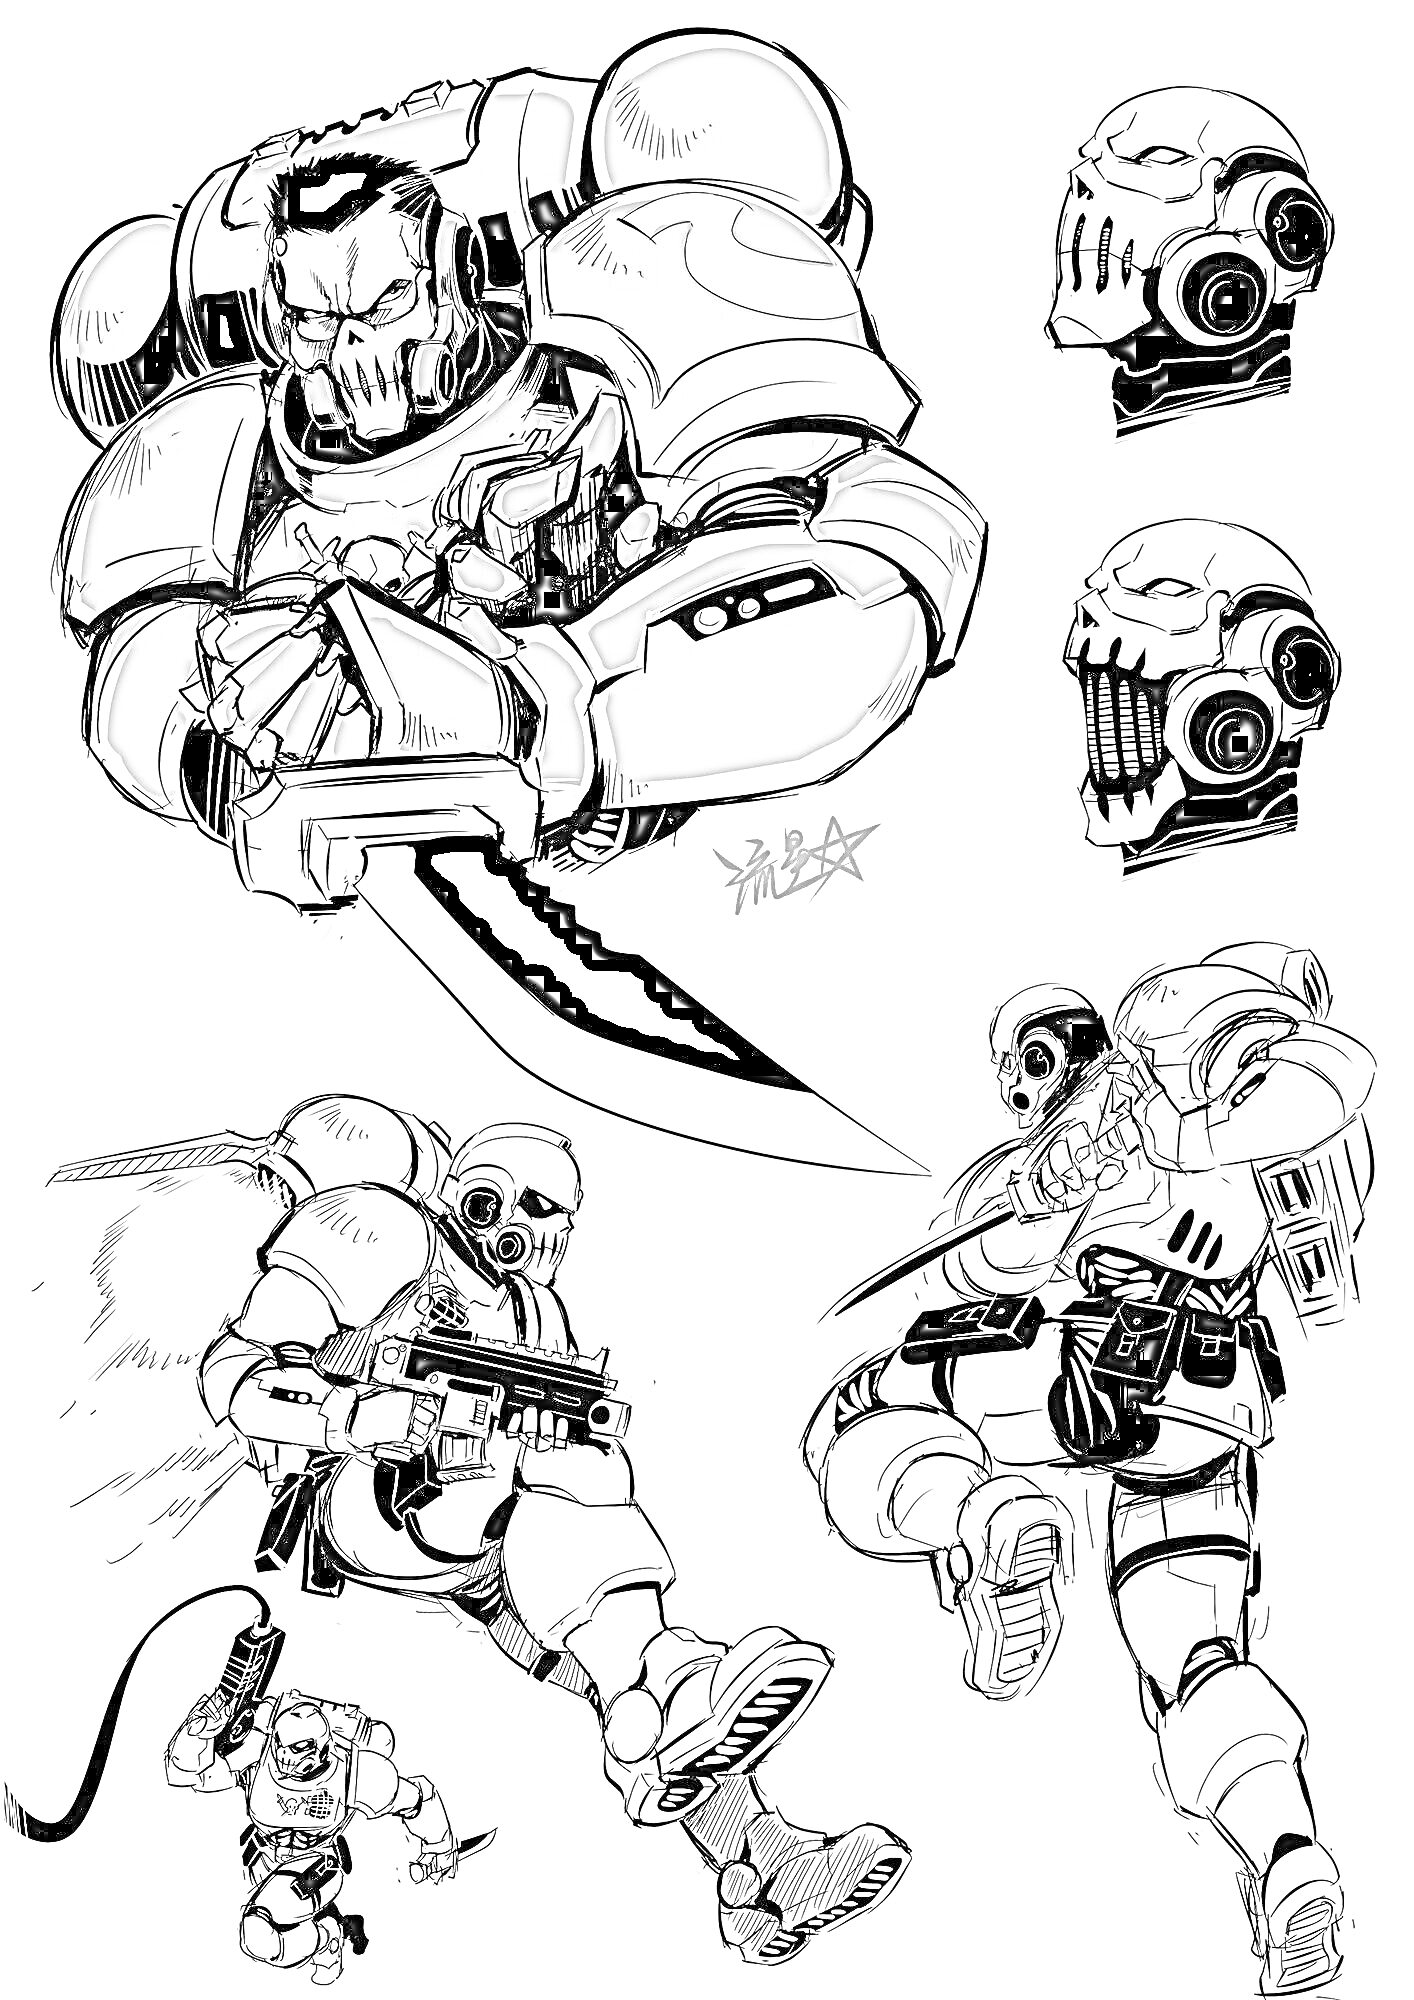 Раскраска Воин с массивным мечом в экзоскелете, стреляющий солдат, два варианта боевой маски